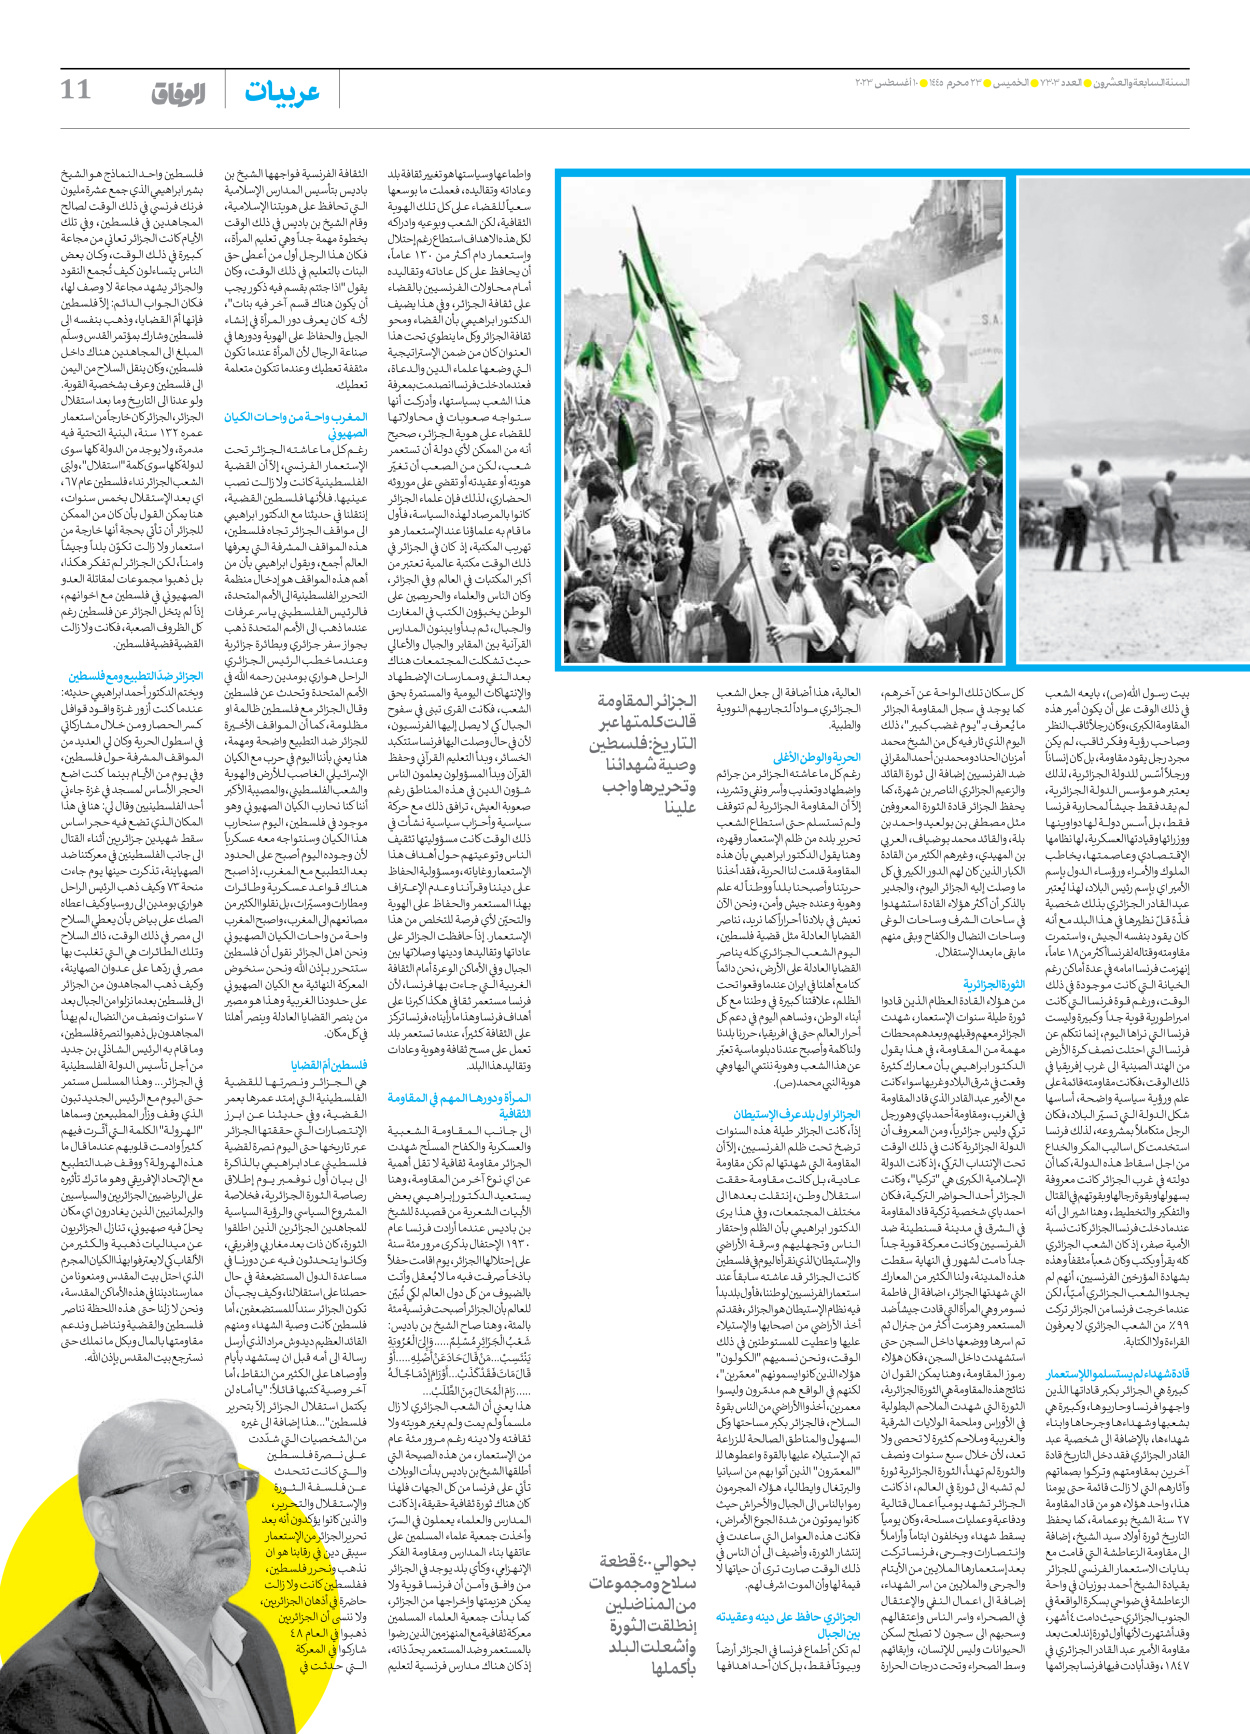 صحیفة ایران الدولیة الوفاق - العدد سبعة آلاف وثلاثمائة وثلاثة - ١٠ أغسطس ٢٠٢٣ - الصفحة ۱۱